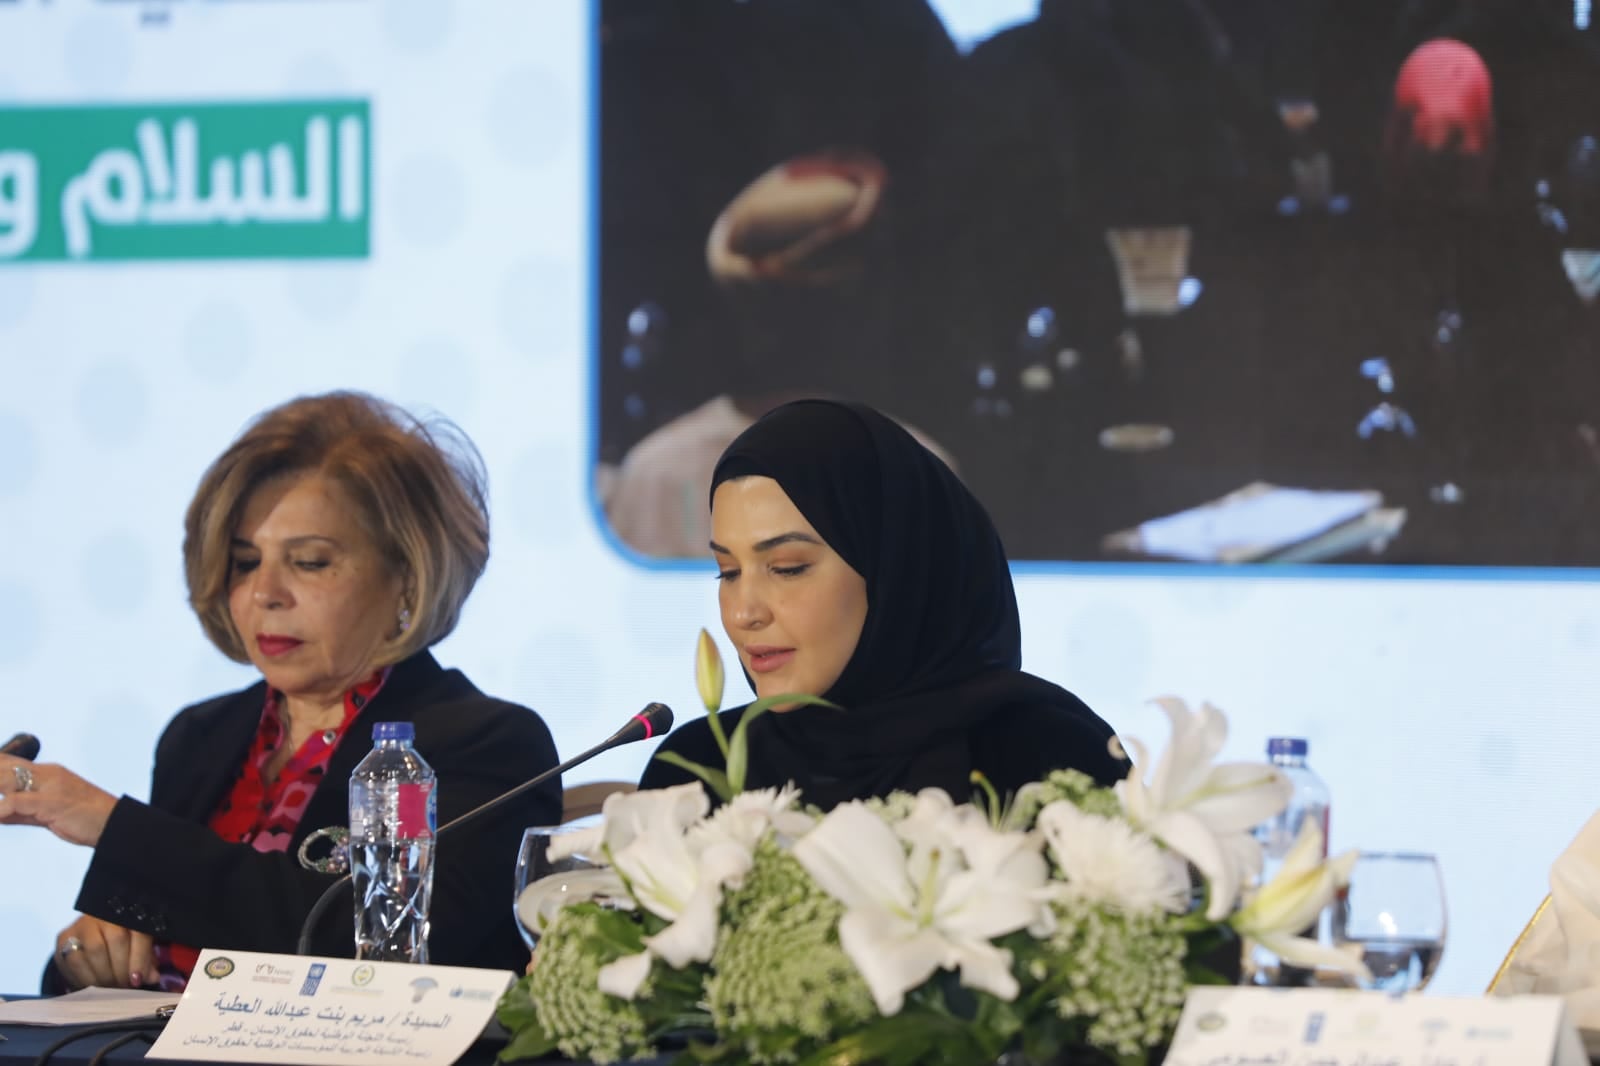  مريم بنت عبدالله العطية، رئيس الشبكة العربية للمؤسسات الوطنية لحقوق الإنسان، ورئيس اللجنة الوطنية لحقوق الإنسان في قطر 